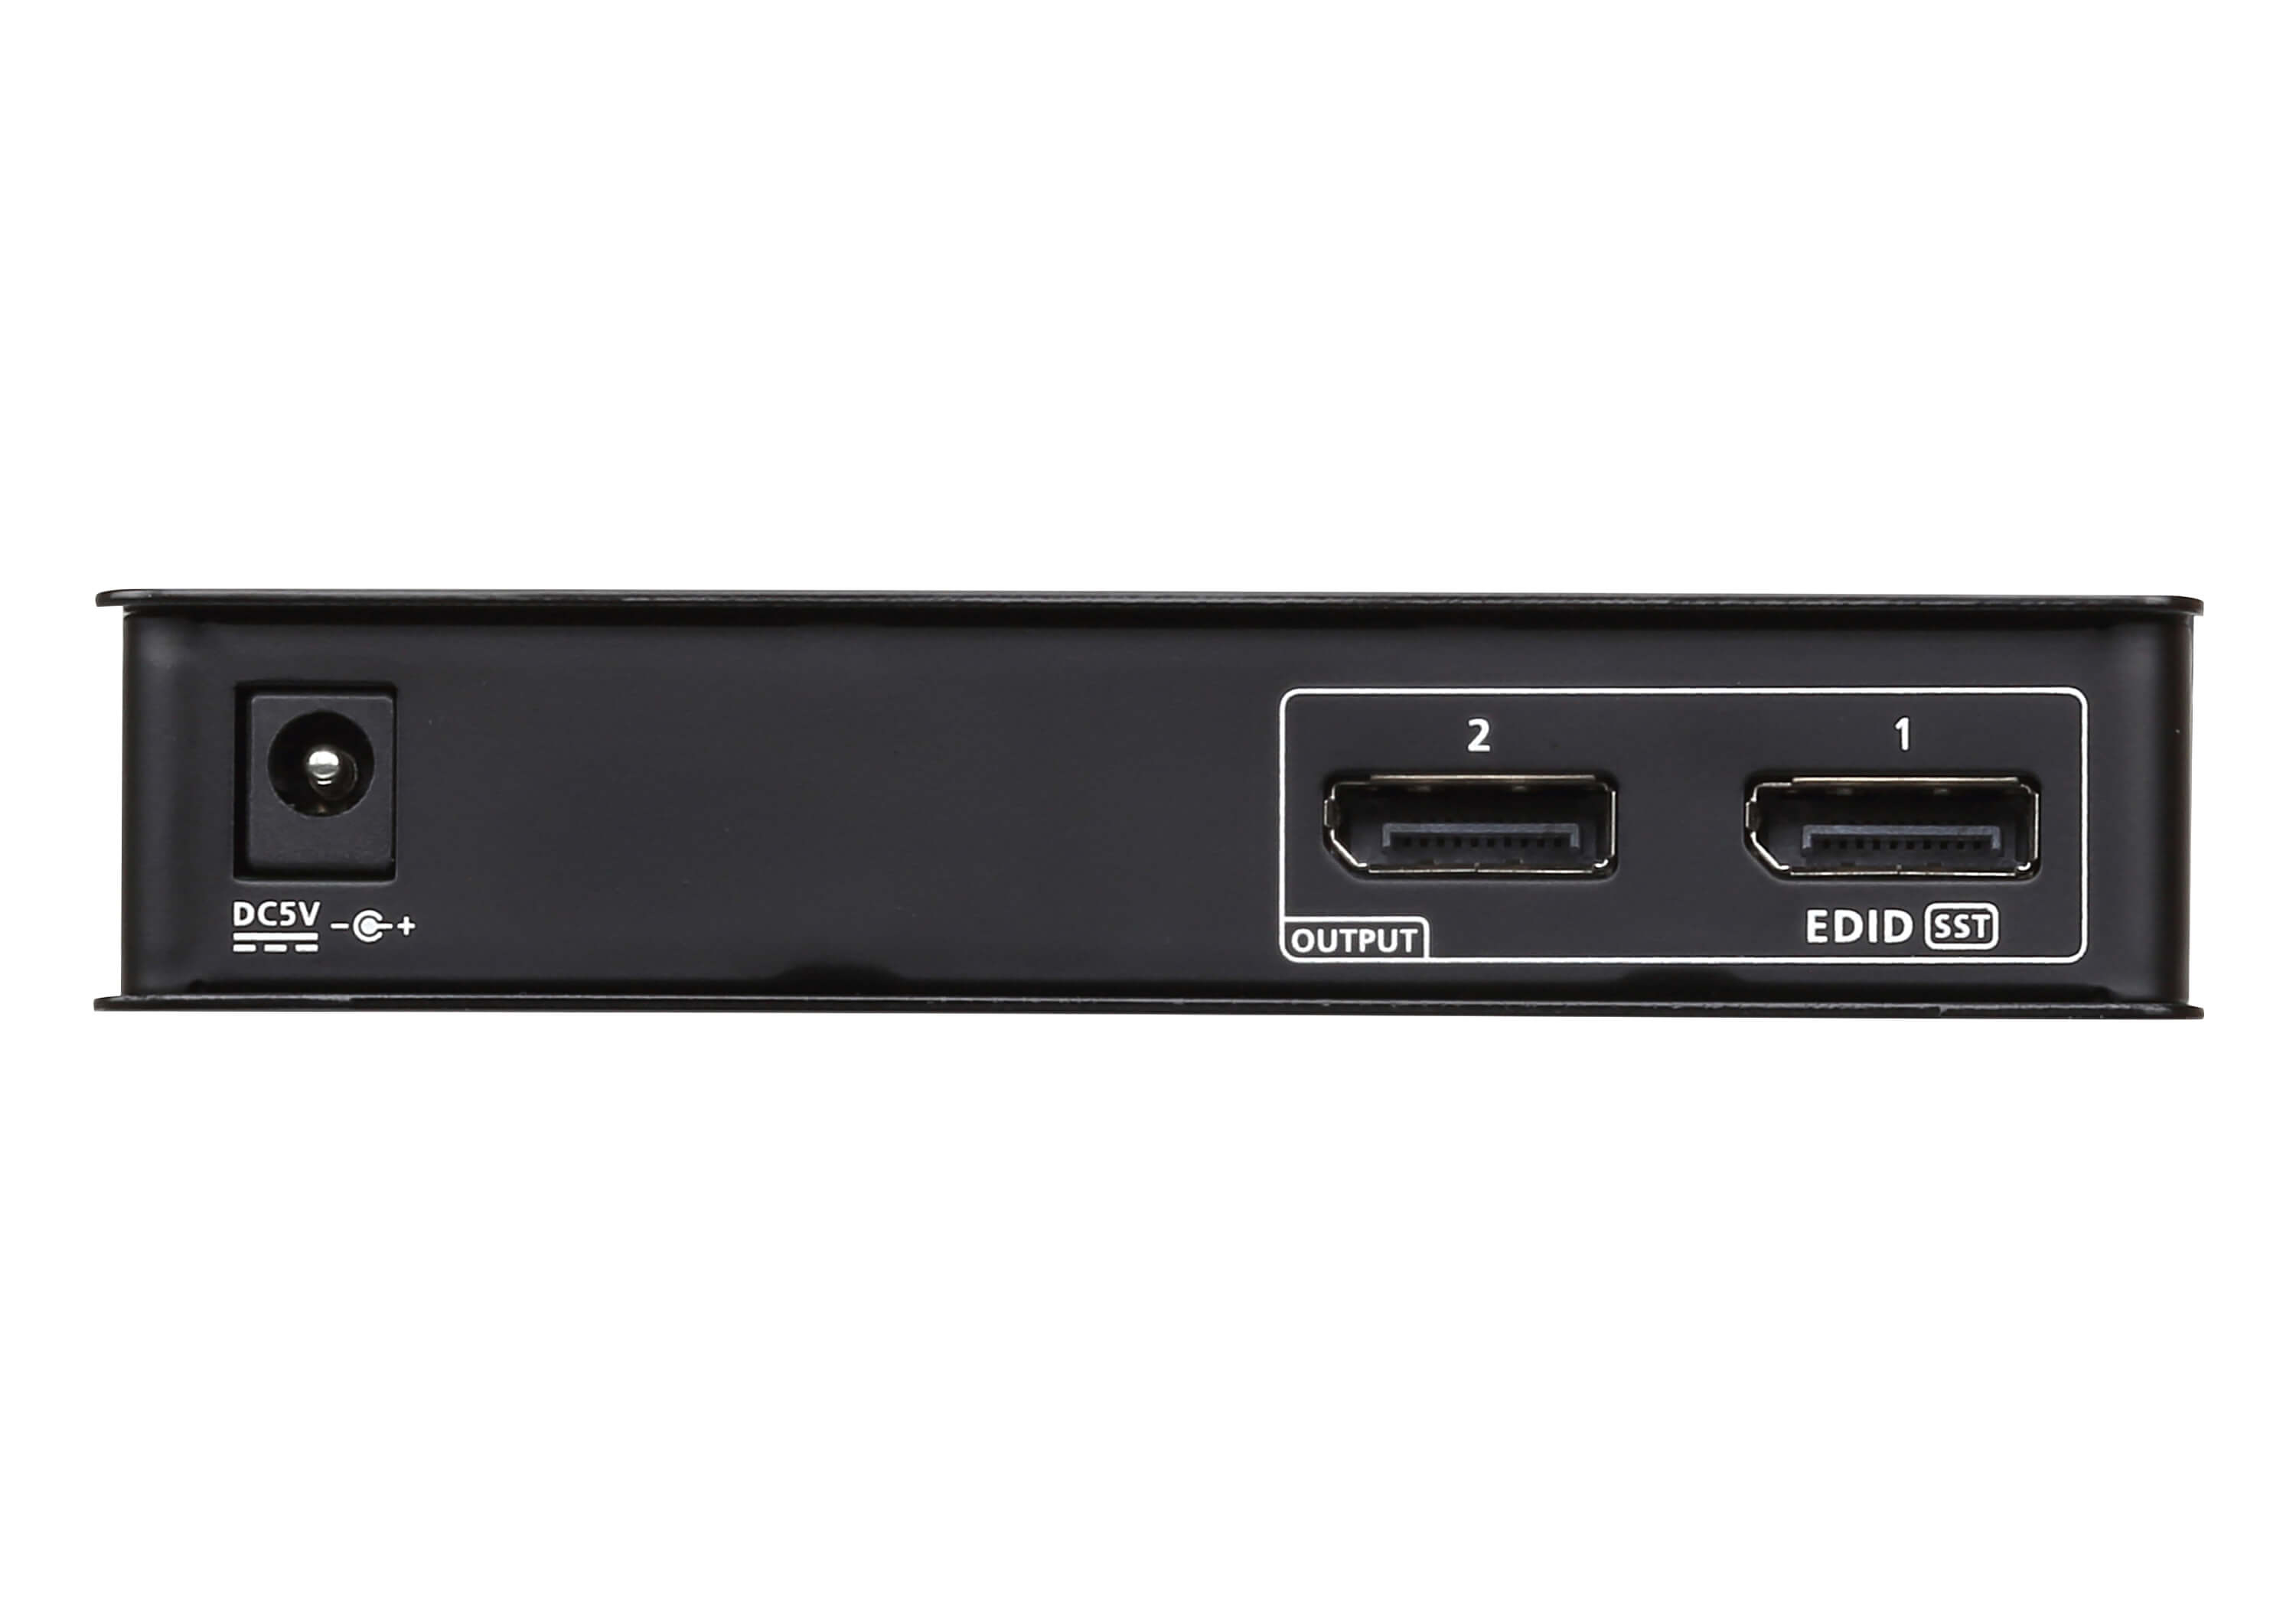 取寄 ATEN VS192 DisplayPort 2分配器(4K対応)